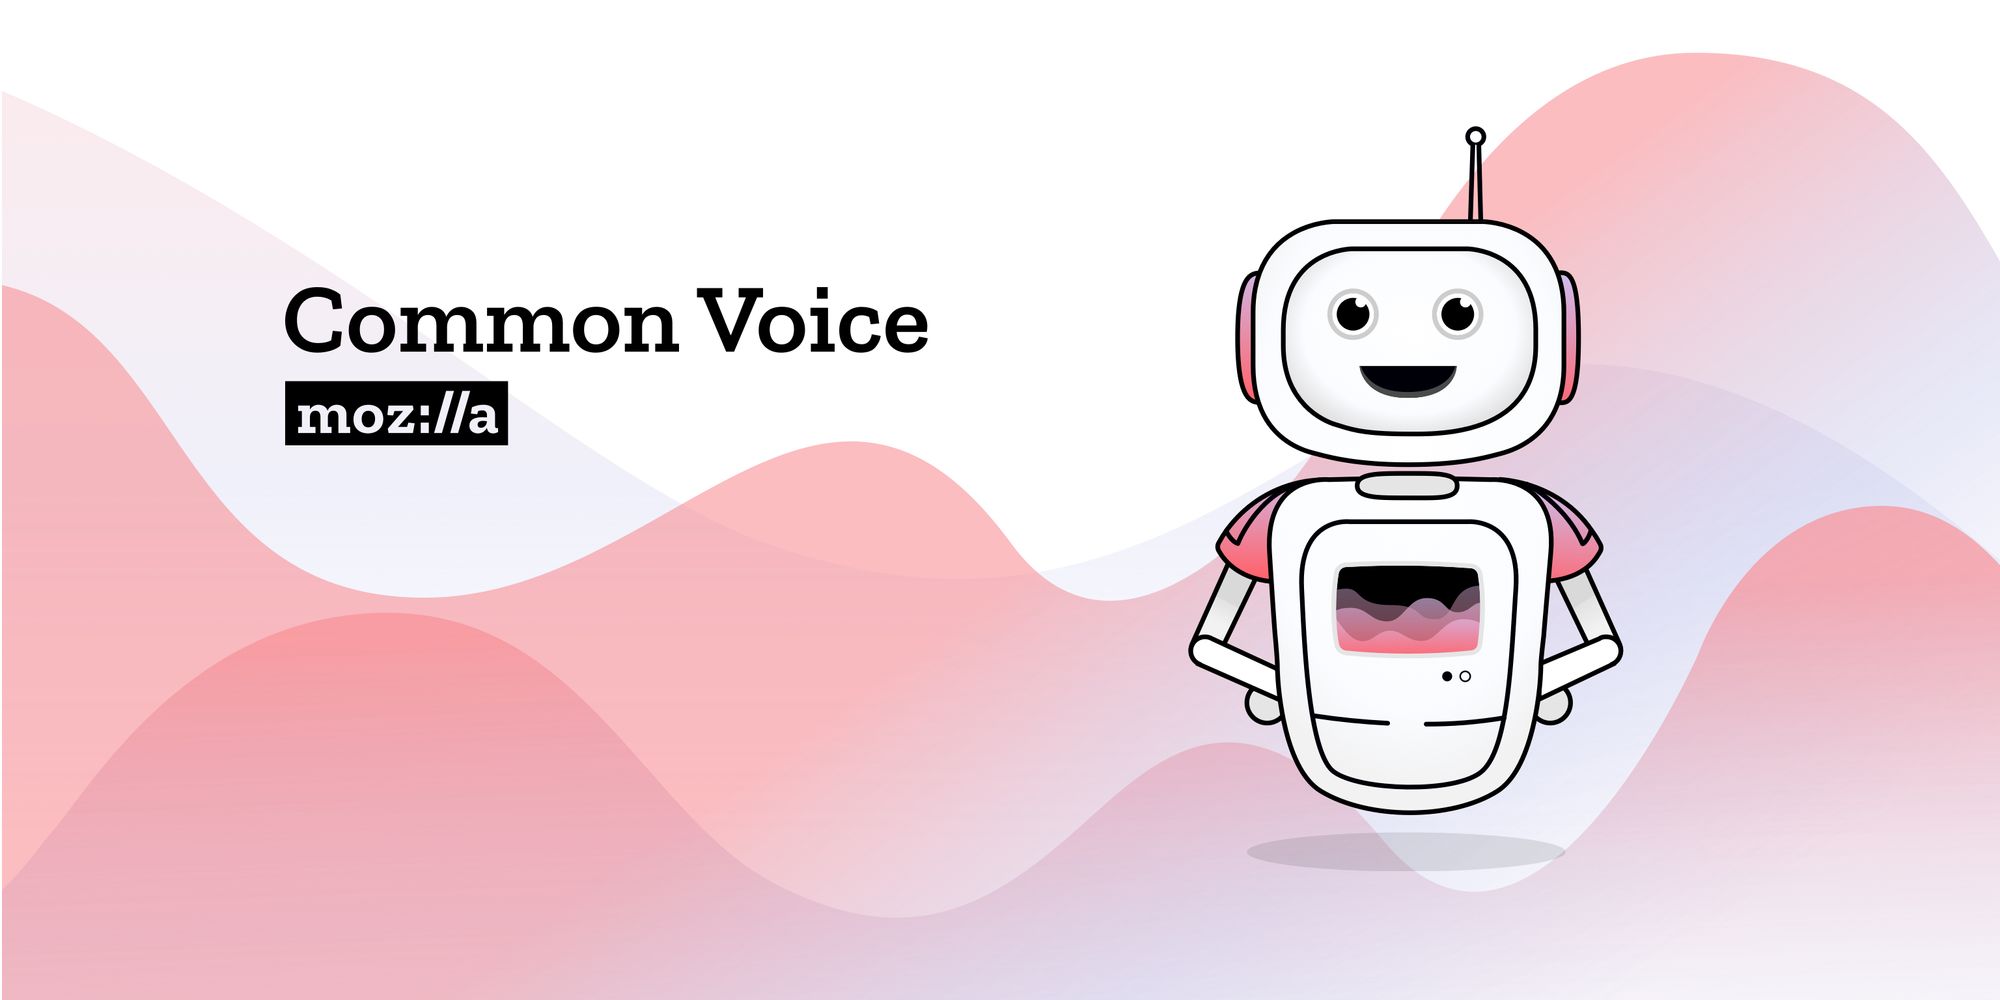 Mozilla Common Voice